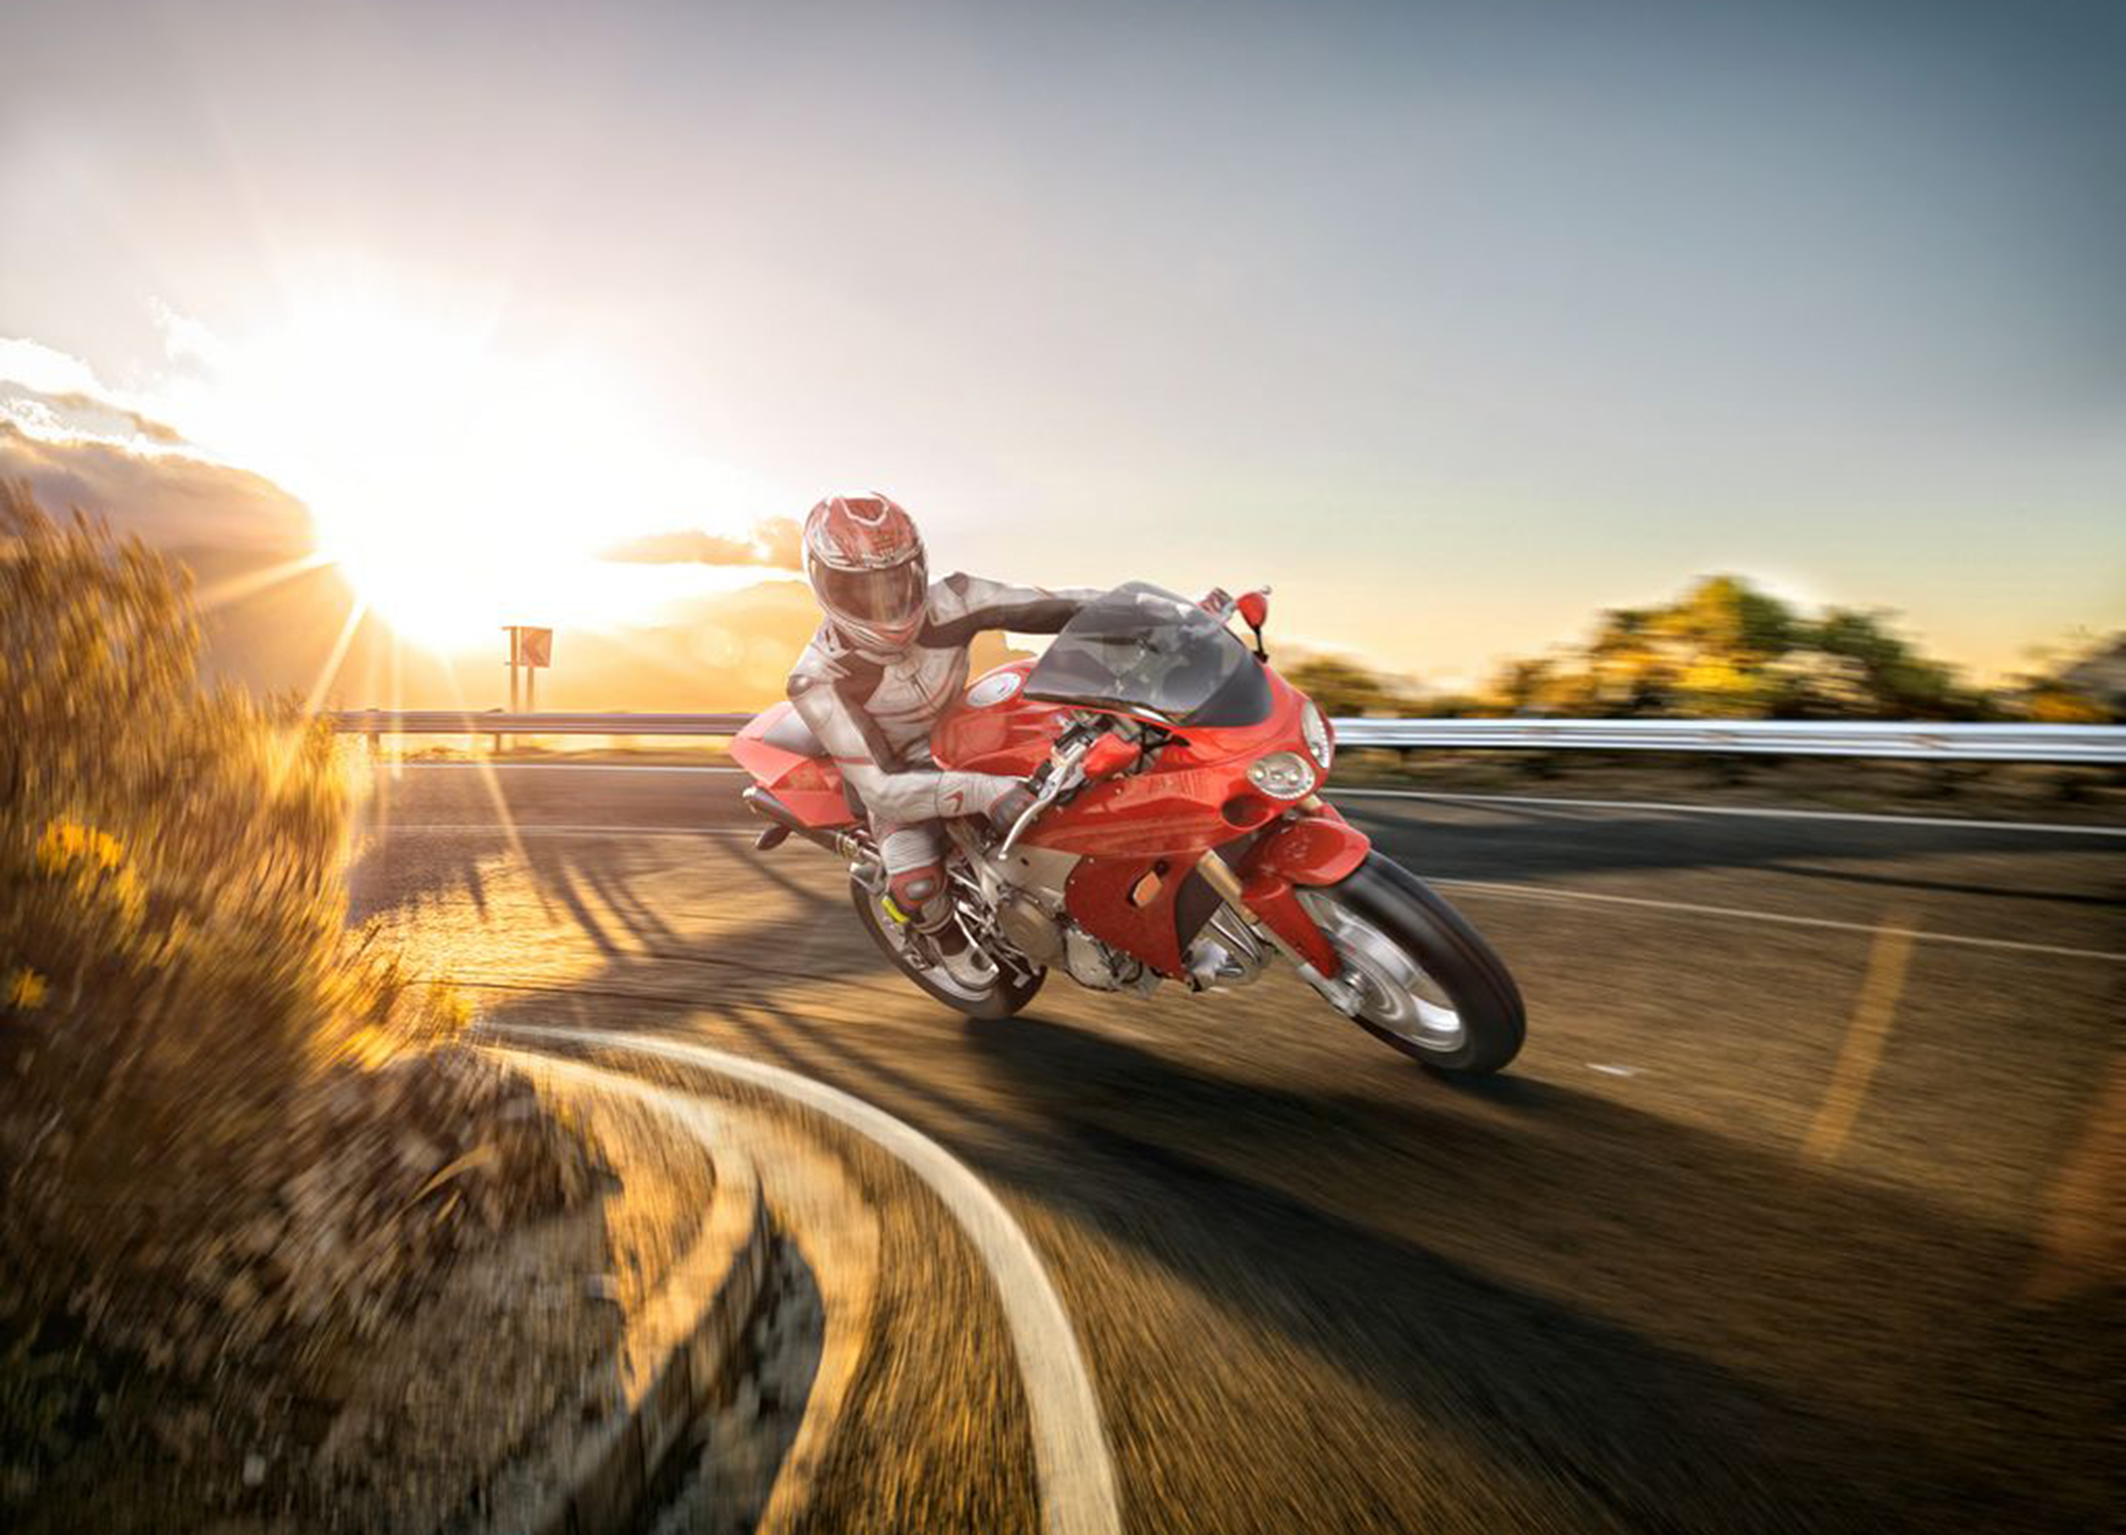 EICMA International Motorcycle Show 2015 - Le innovazioni di Bosch offrono più sicurezza, comodità, efficienza e divertimento alla guida per le due ruote